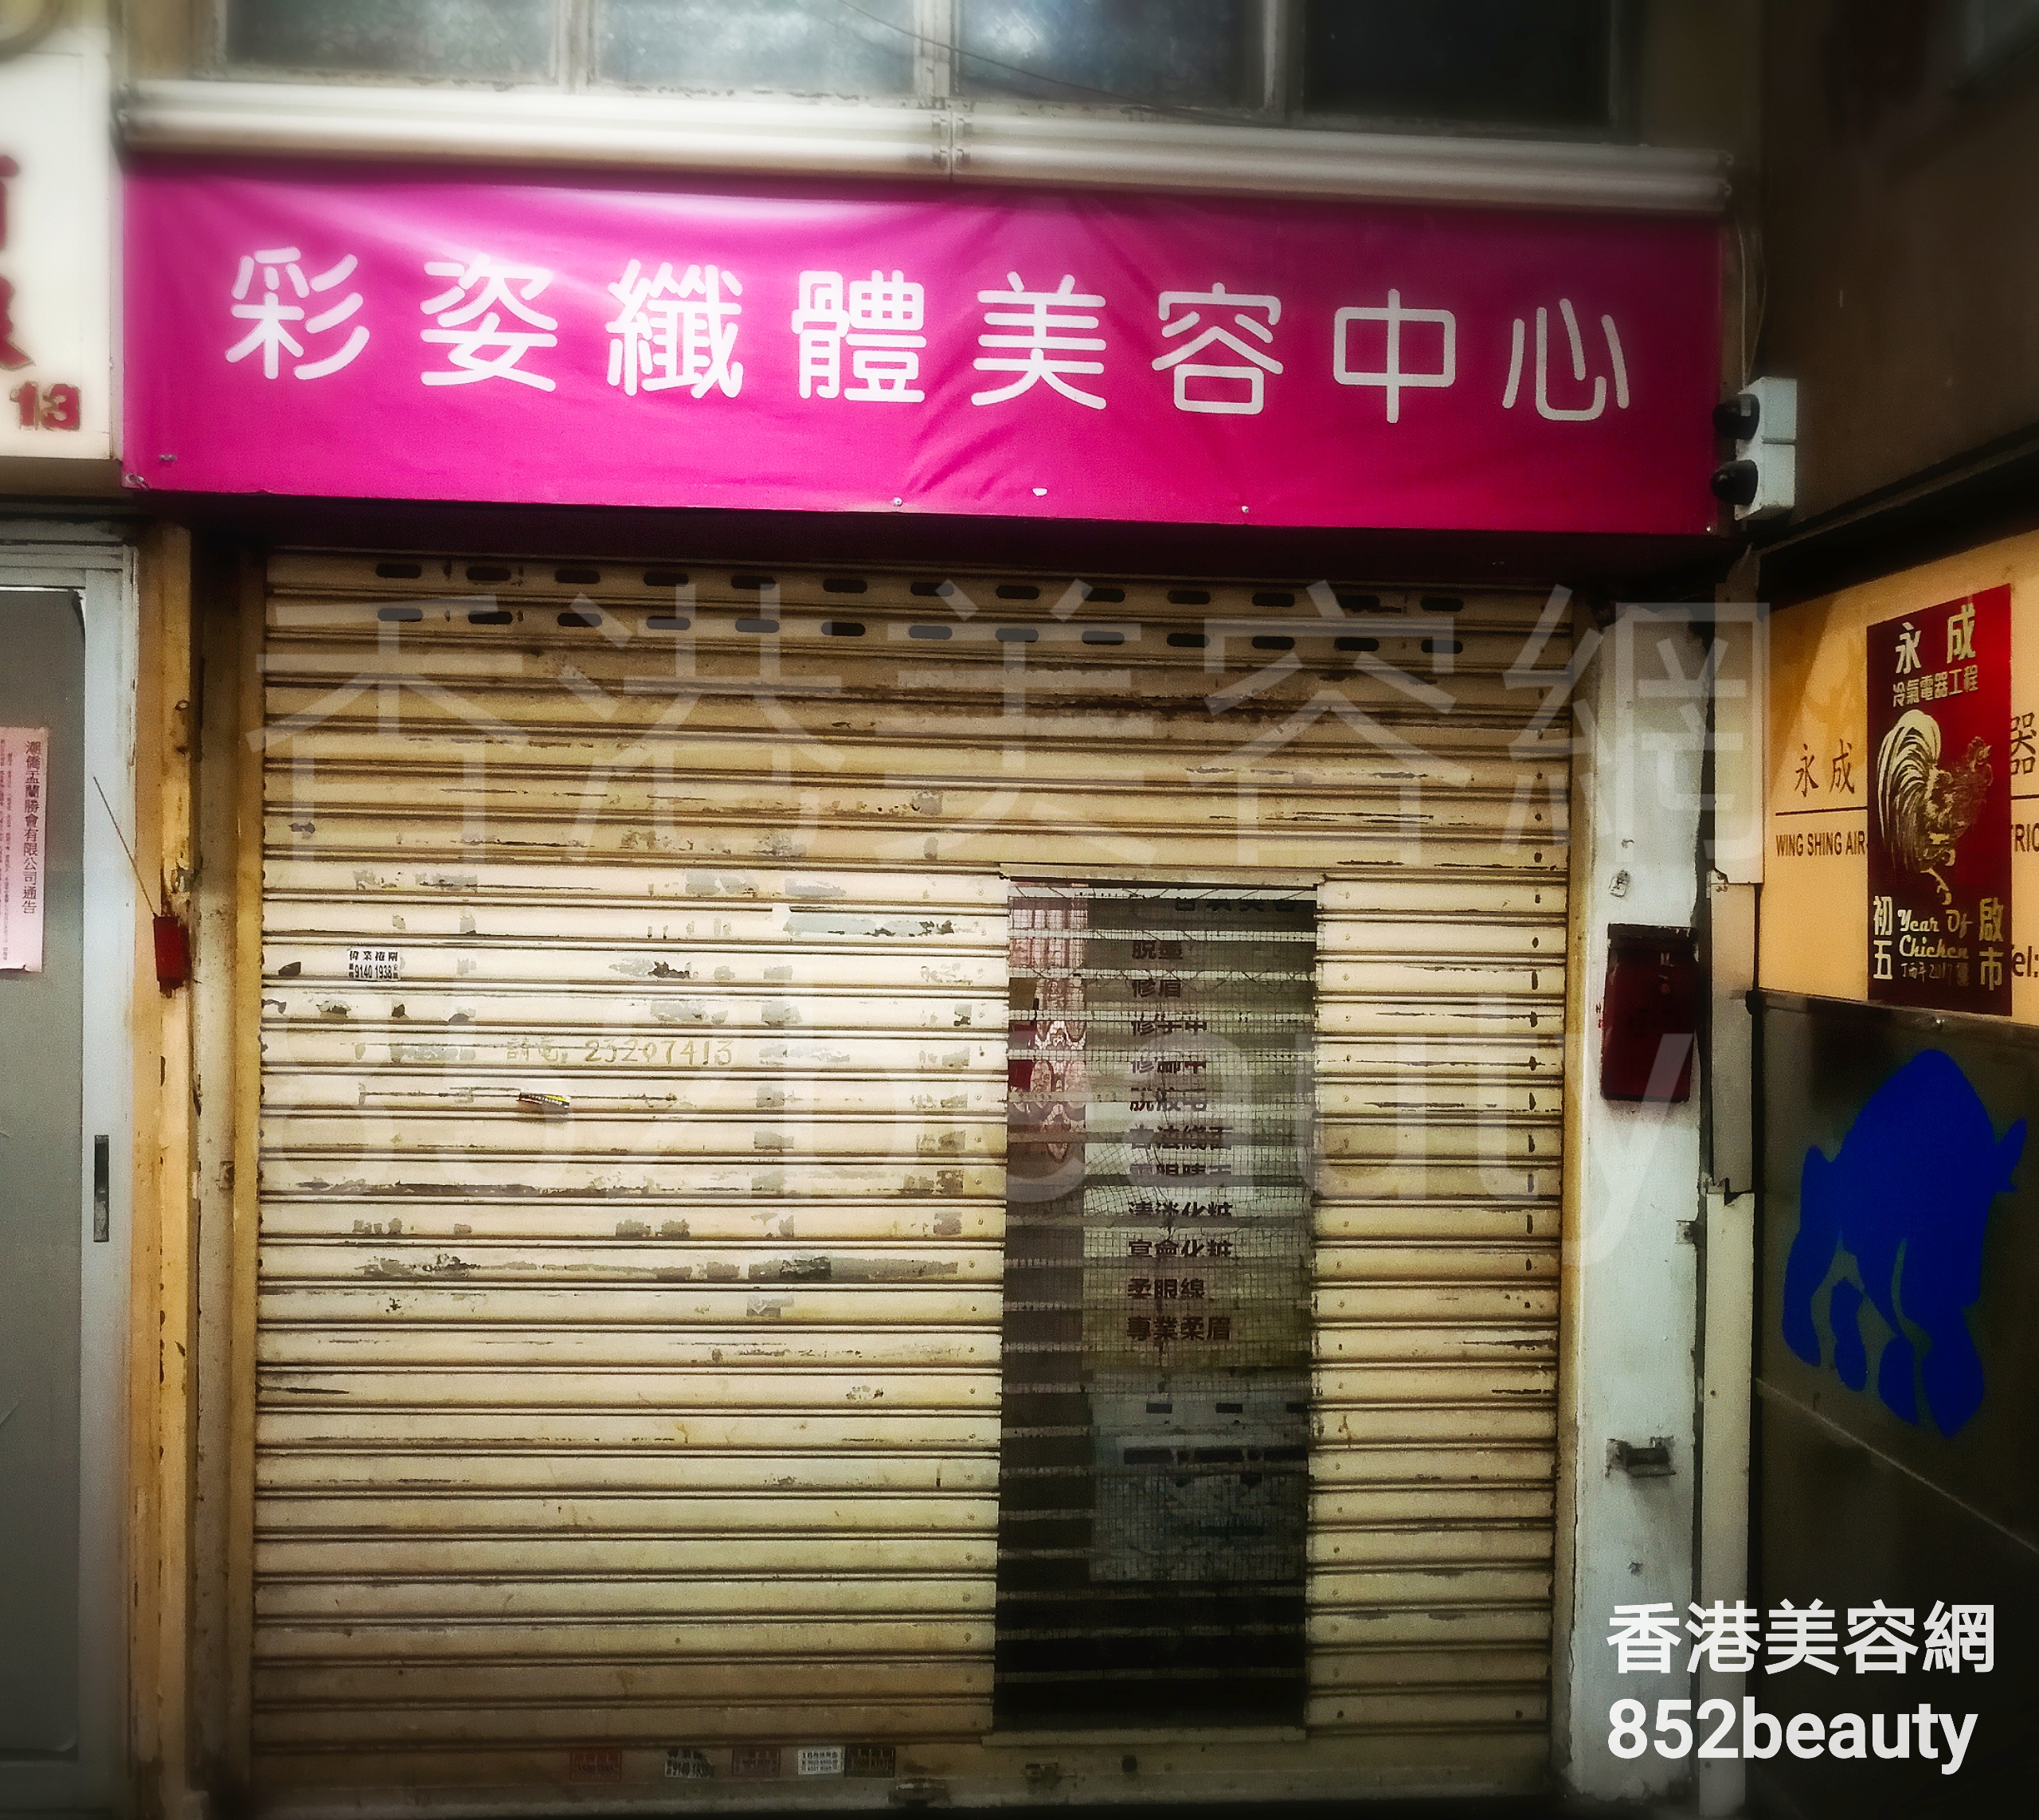 香港美容網 Hong Kong Beauty Salon 美容院 / 美容師: 彩姿纖體美容中心